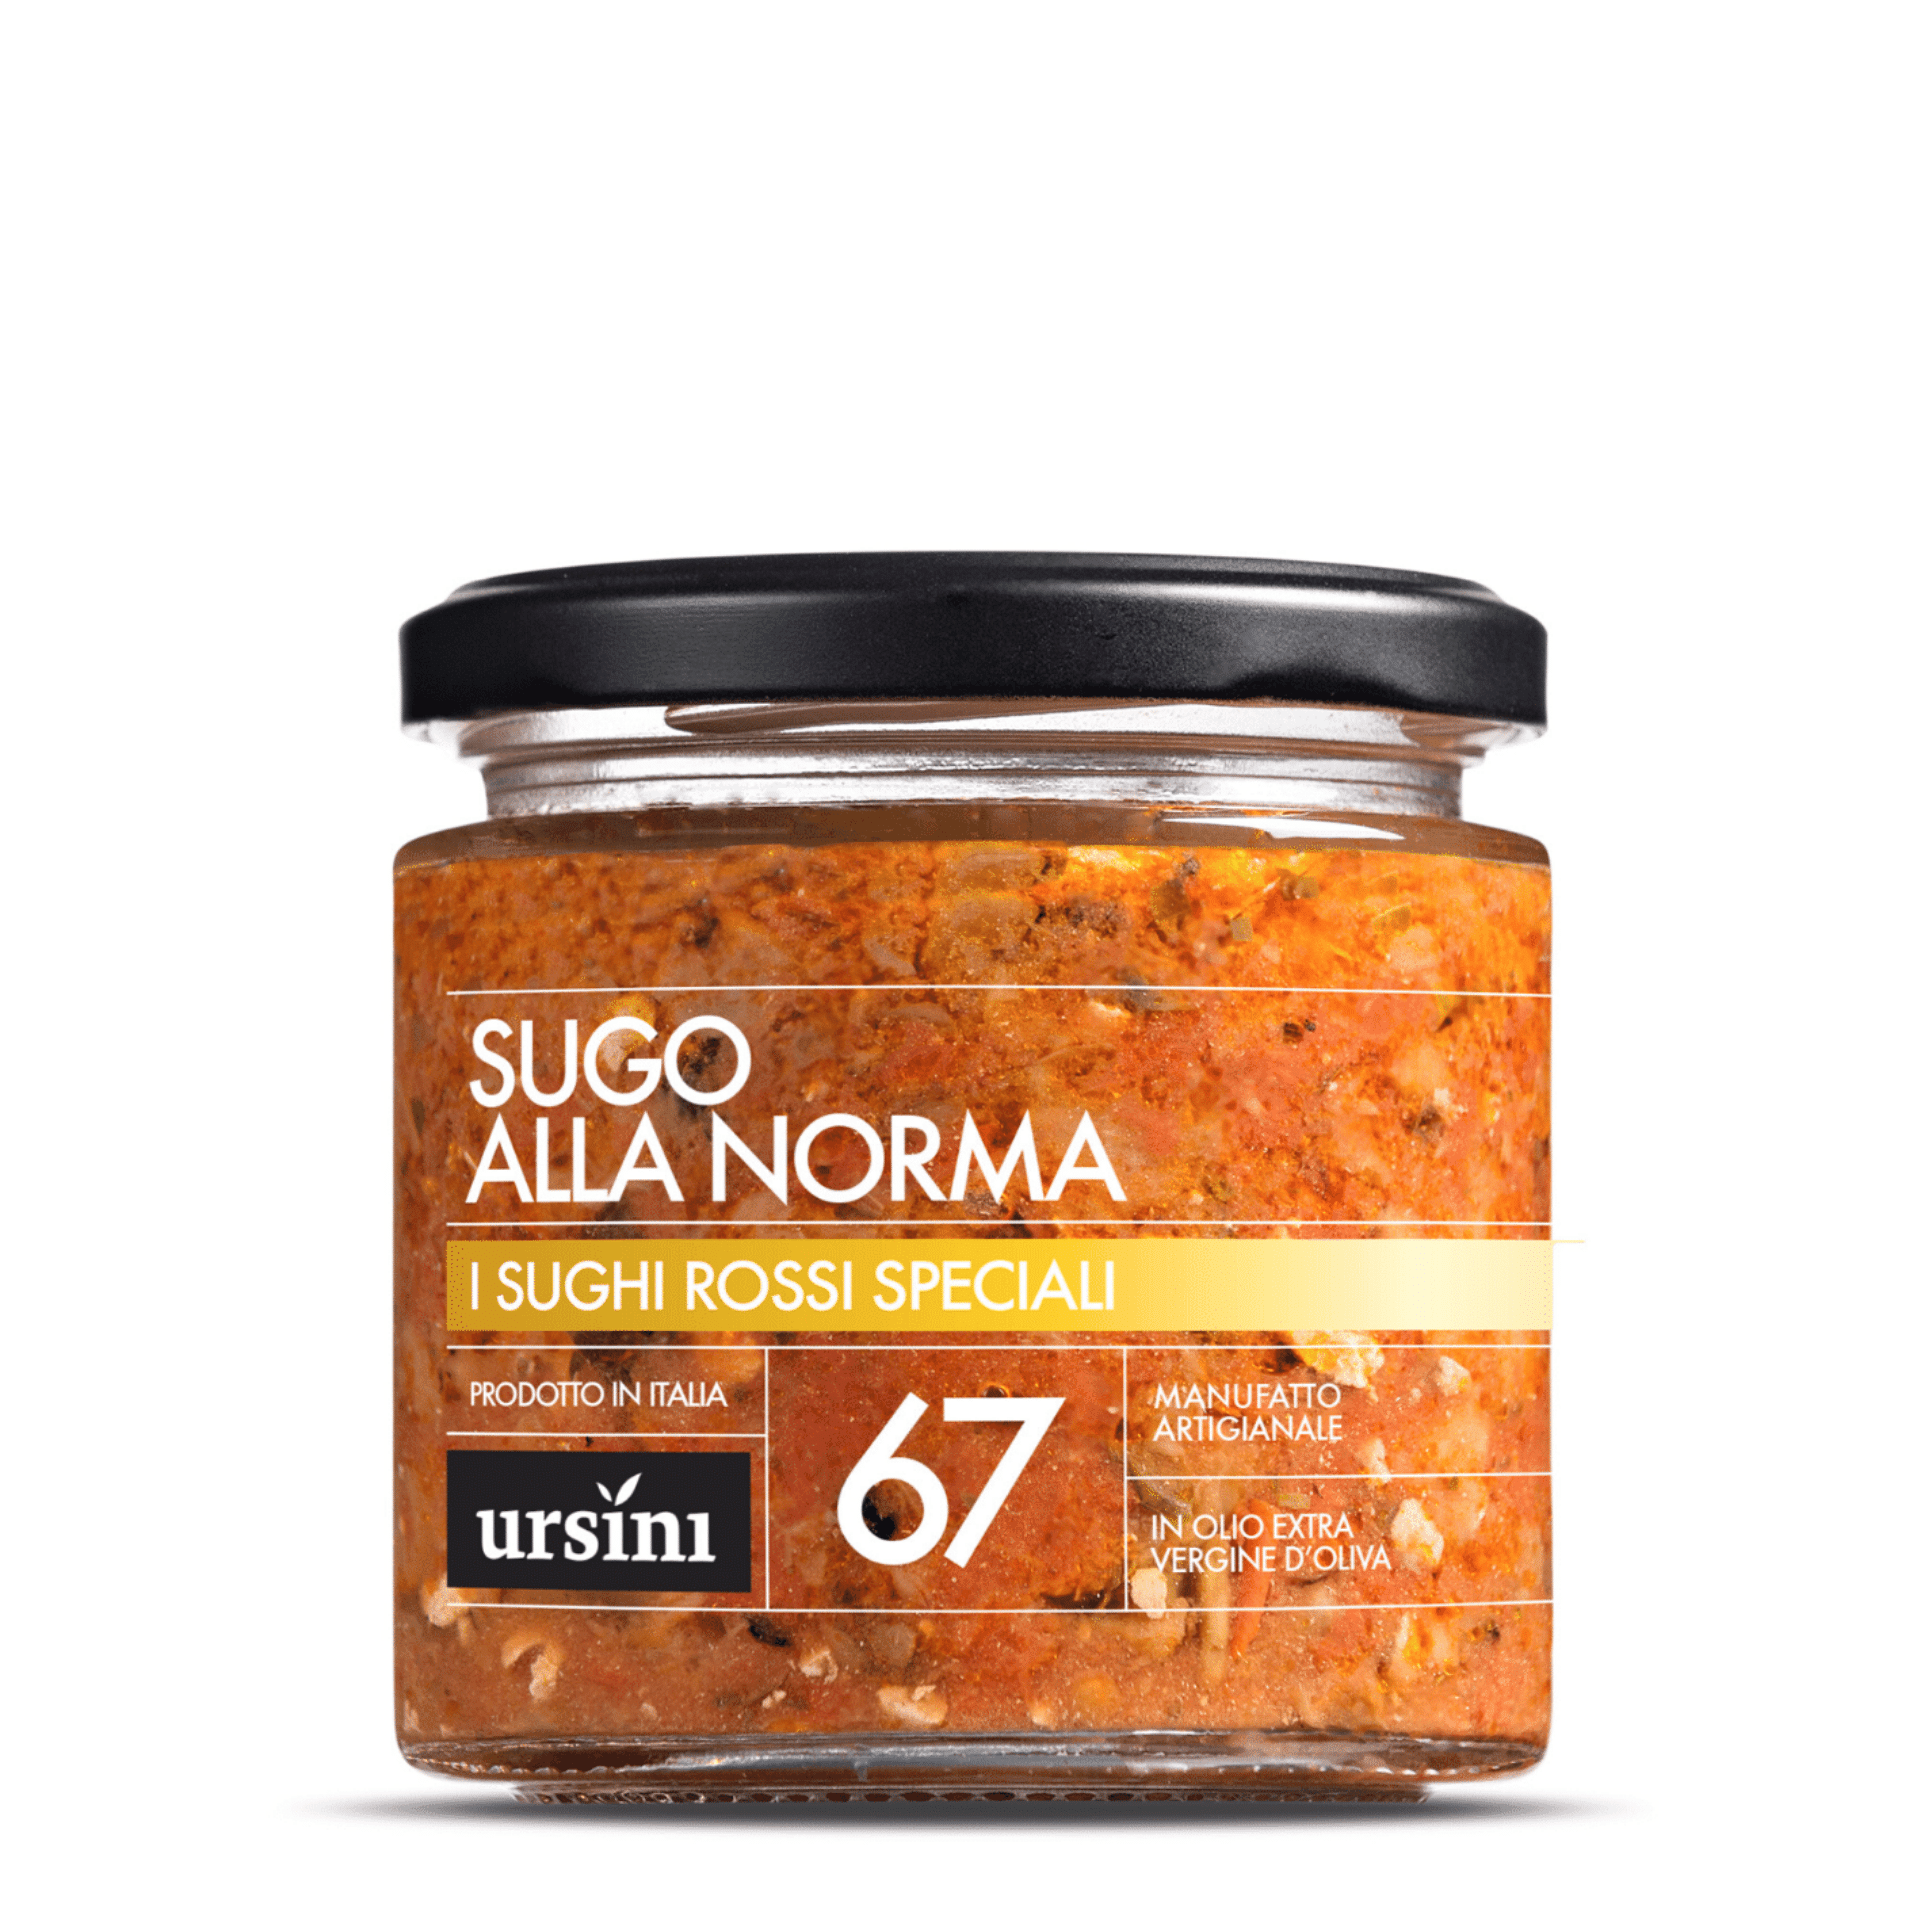 Tasty Ribbon "Alla Norma" Tomato Sauce